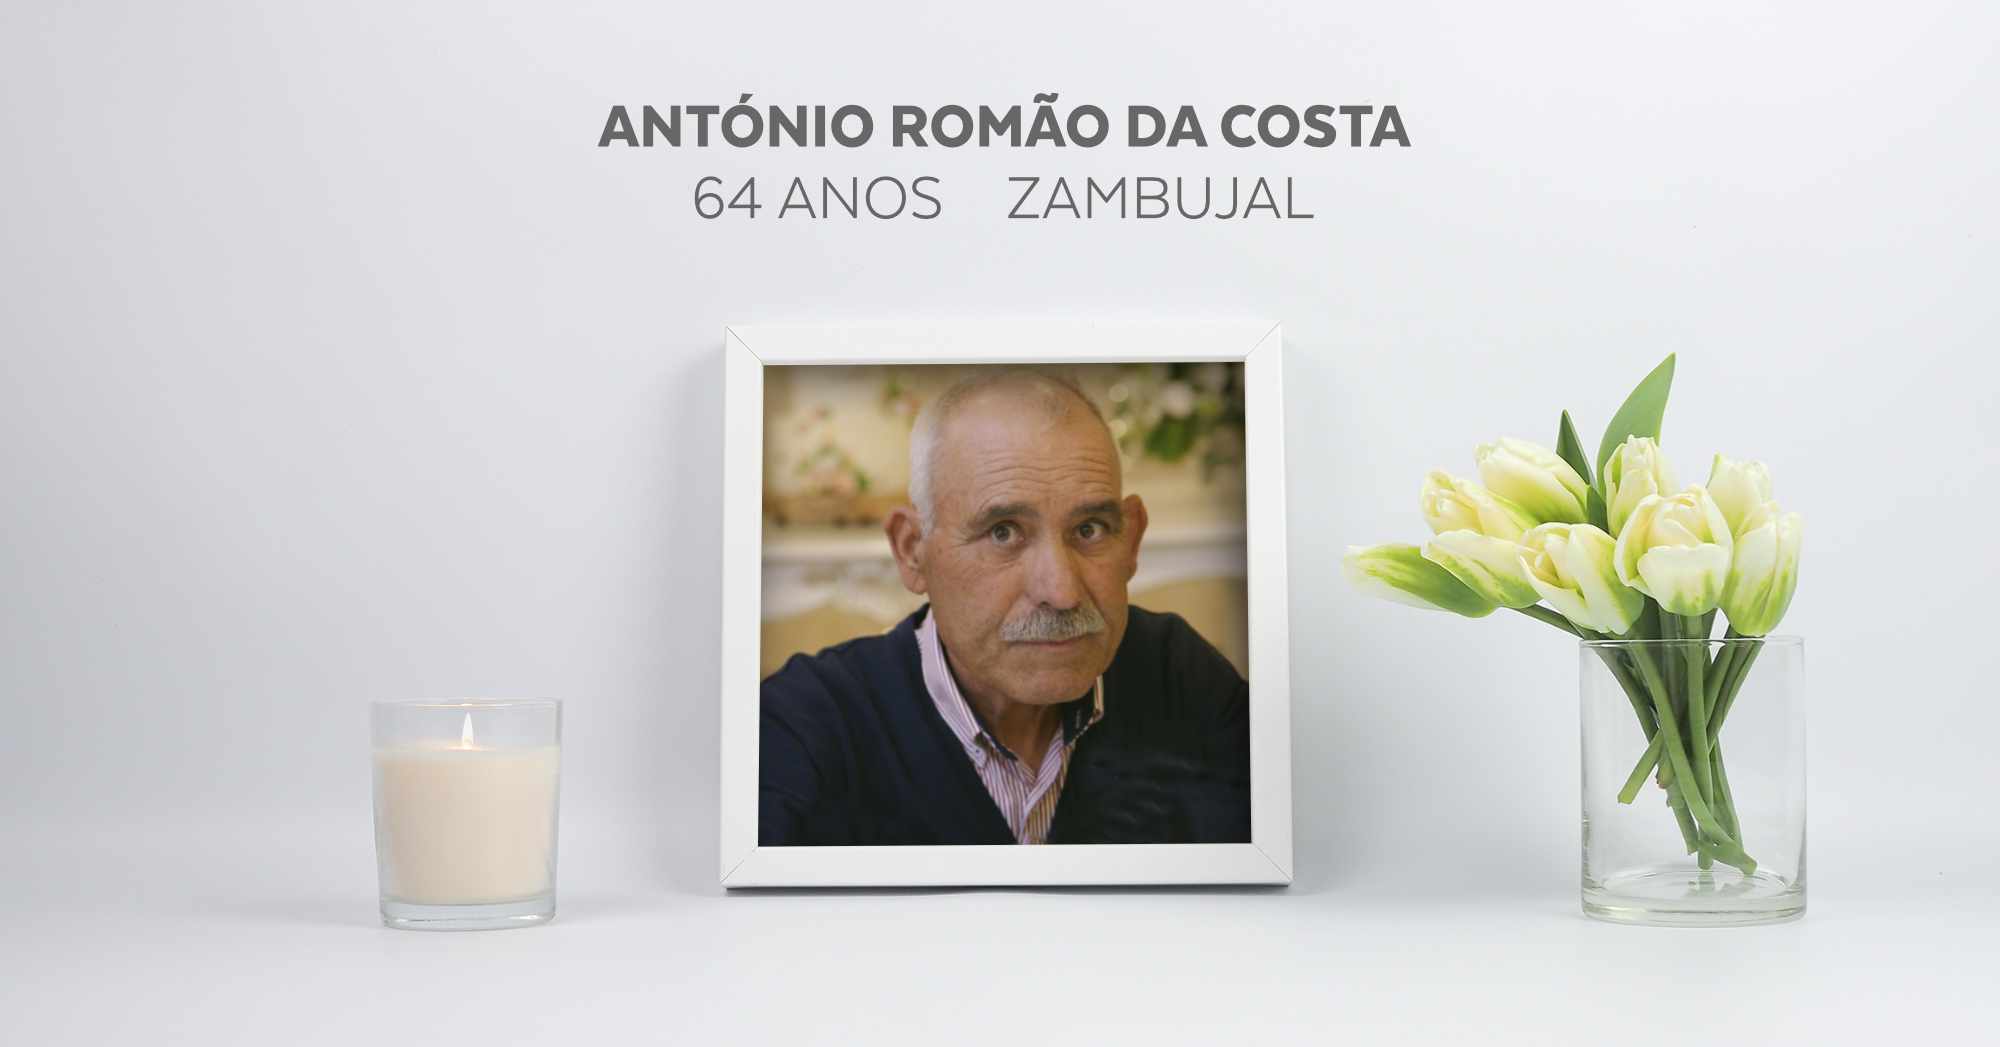 António Romão da Costa